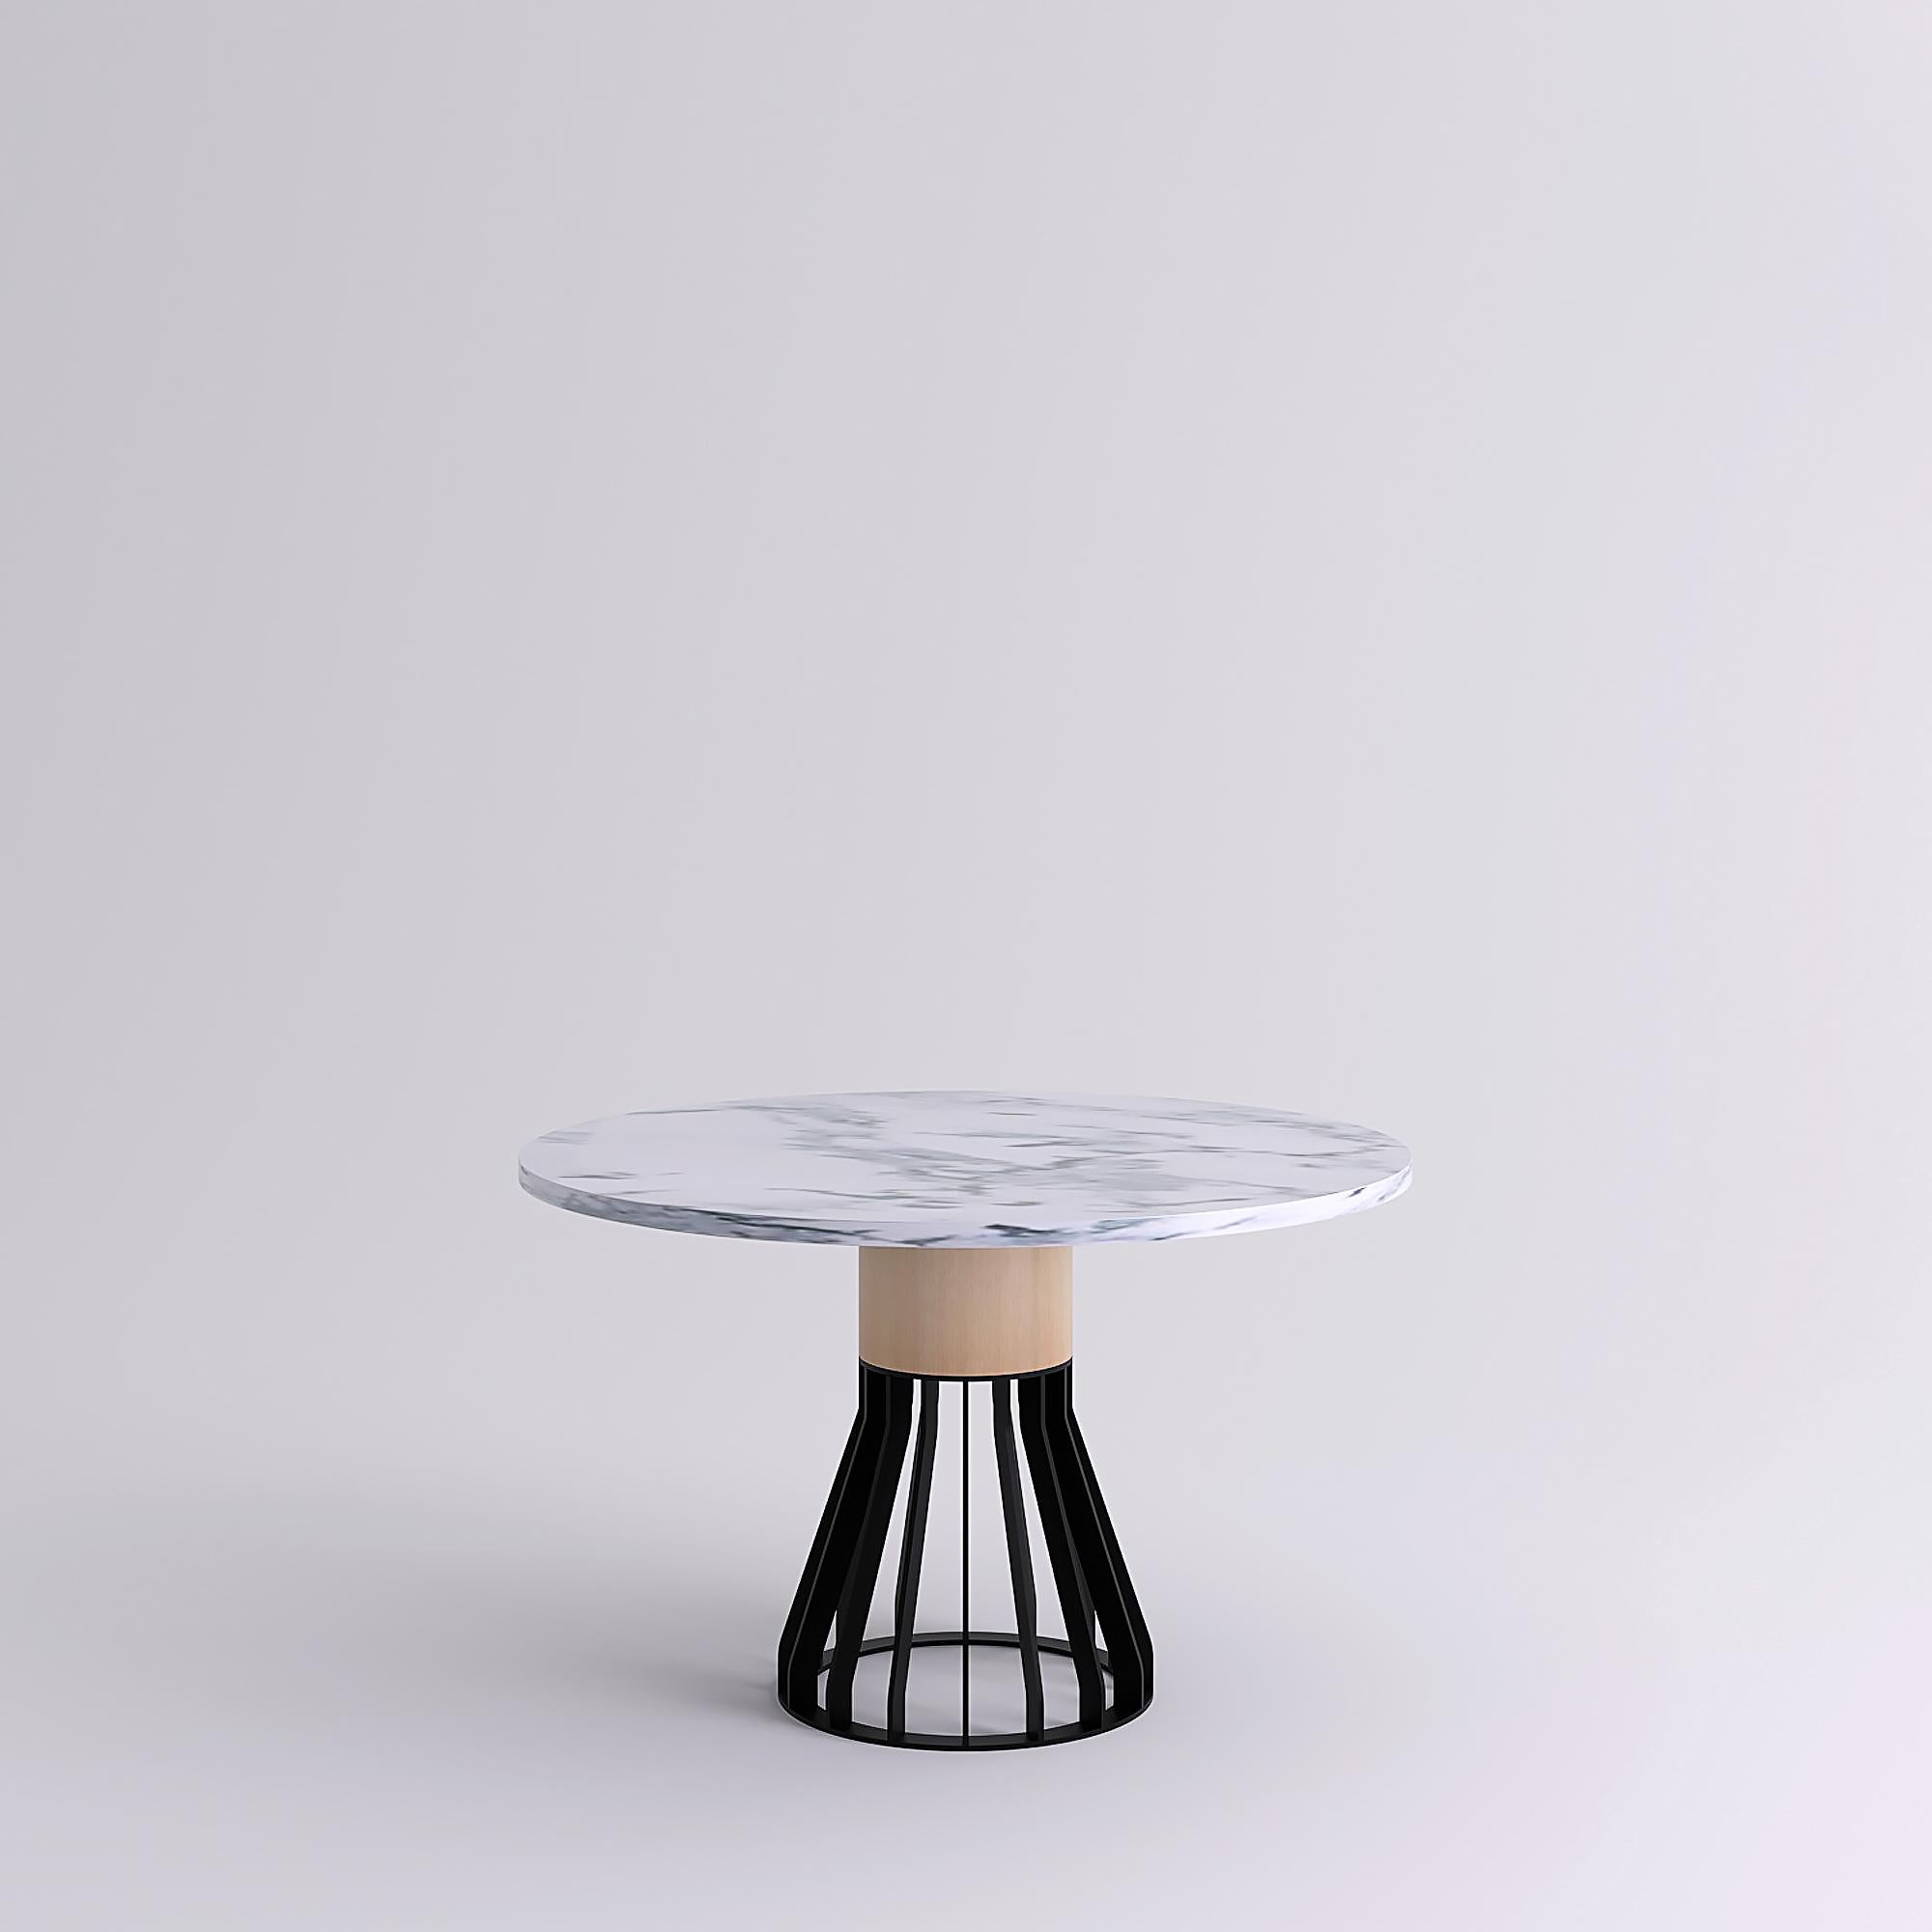 Mewoma est une famille de tables à la présence sculpturale.
La table combine une base en métal découpé au laser surmontée d'une grande colonne en bois soutenant le plateau en marbre.
Les trois matériaux ont donné leur nom à la table : métal (ME),